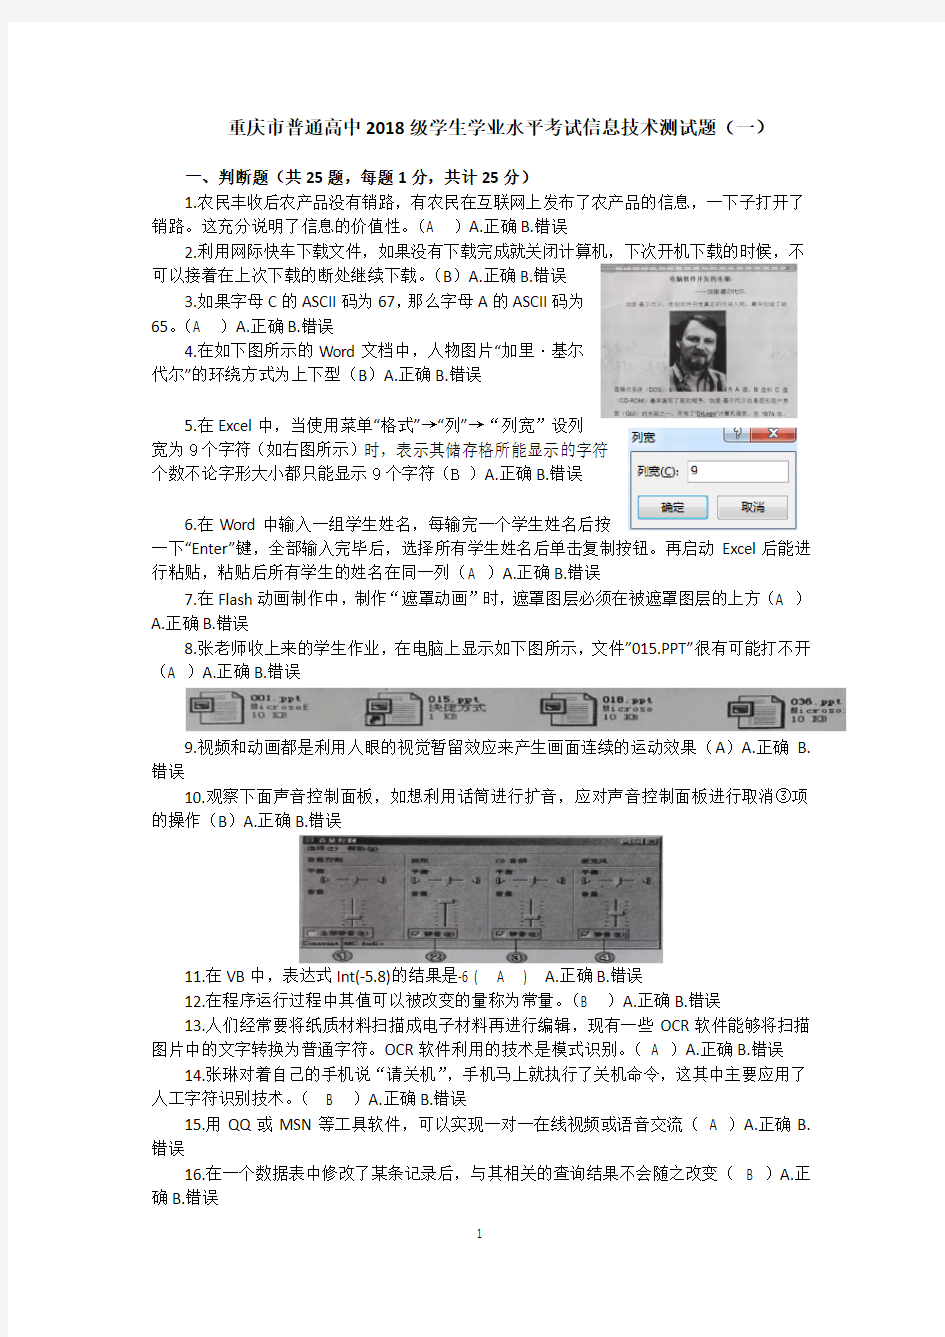 重庆市普通高中2018级学生学业水平考试信息技术测试题(一)